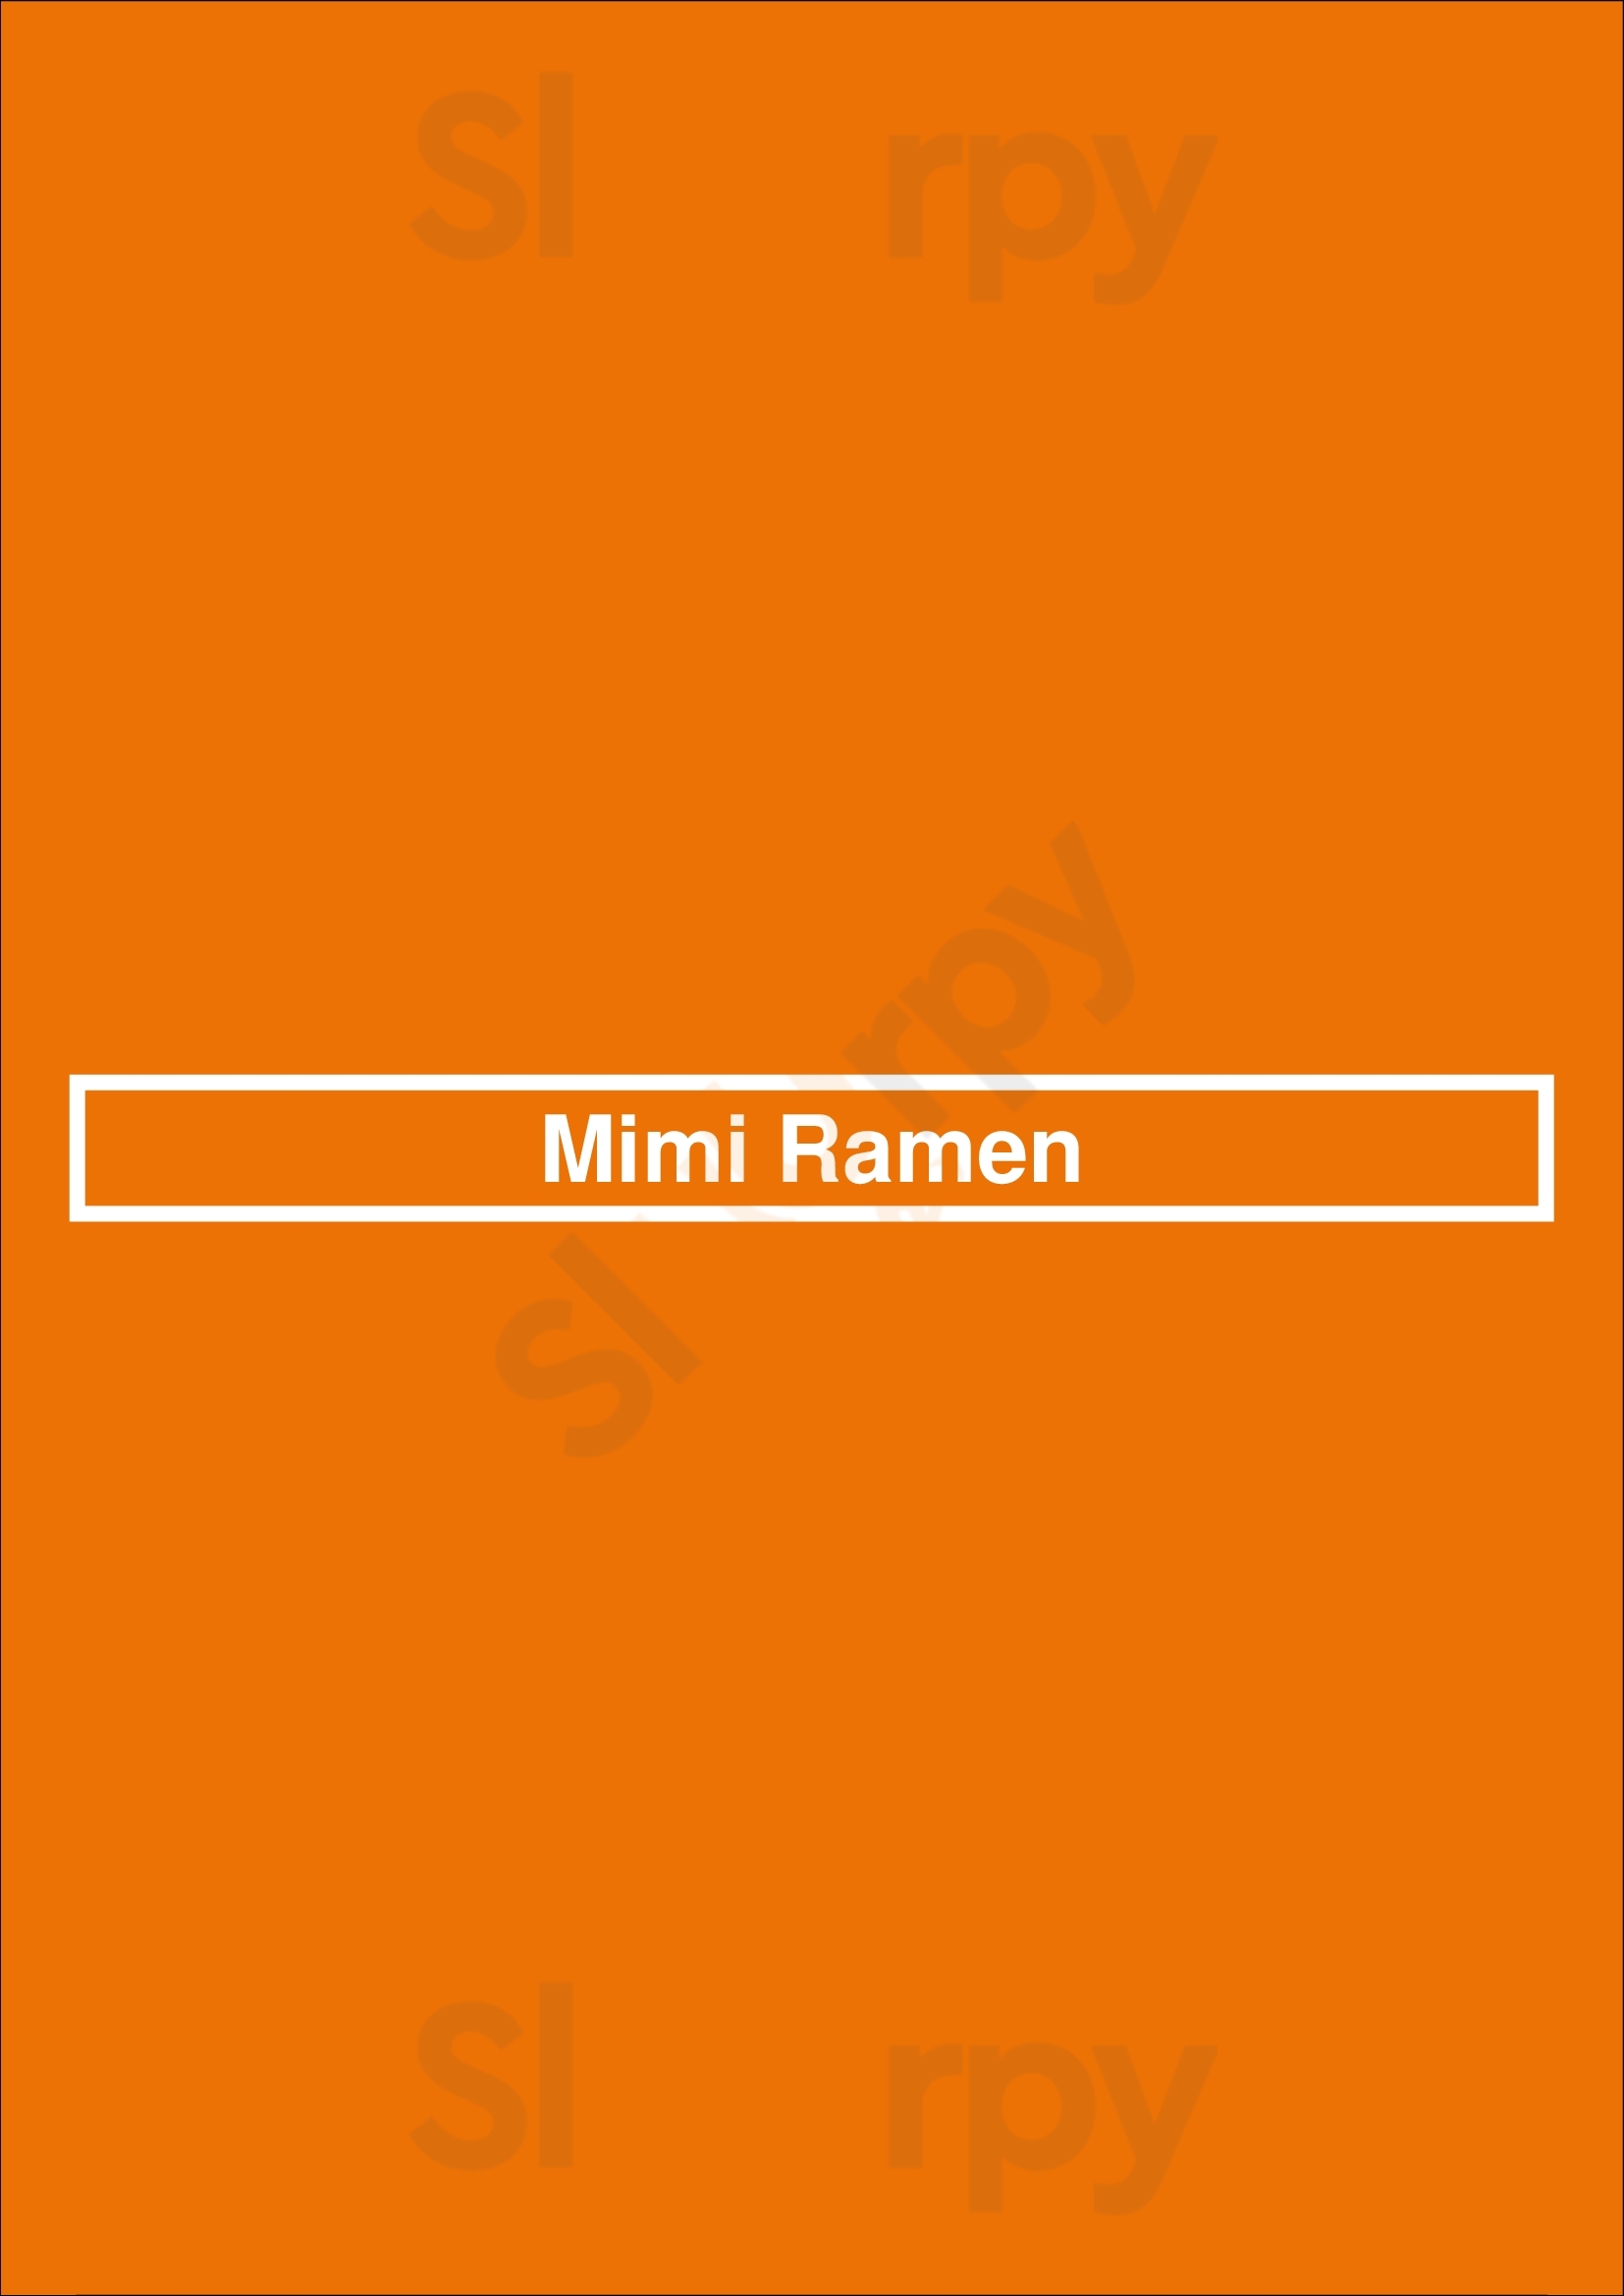 Mimi Ramen Paris Menu - 1